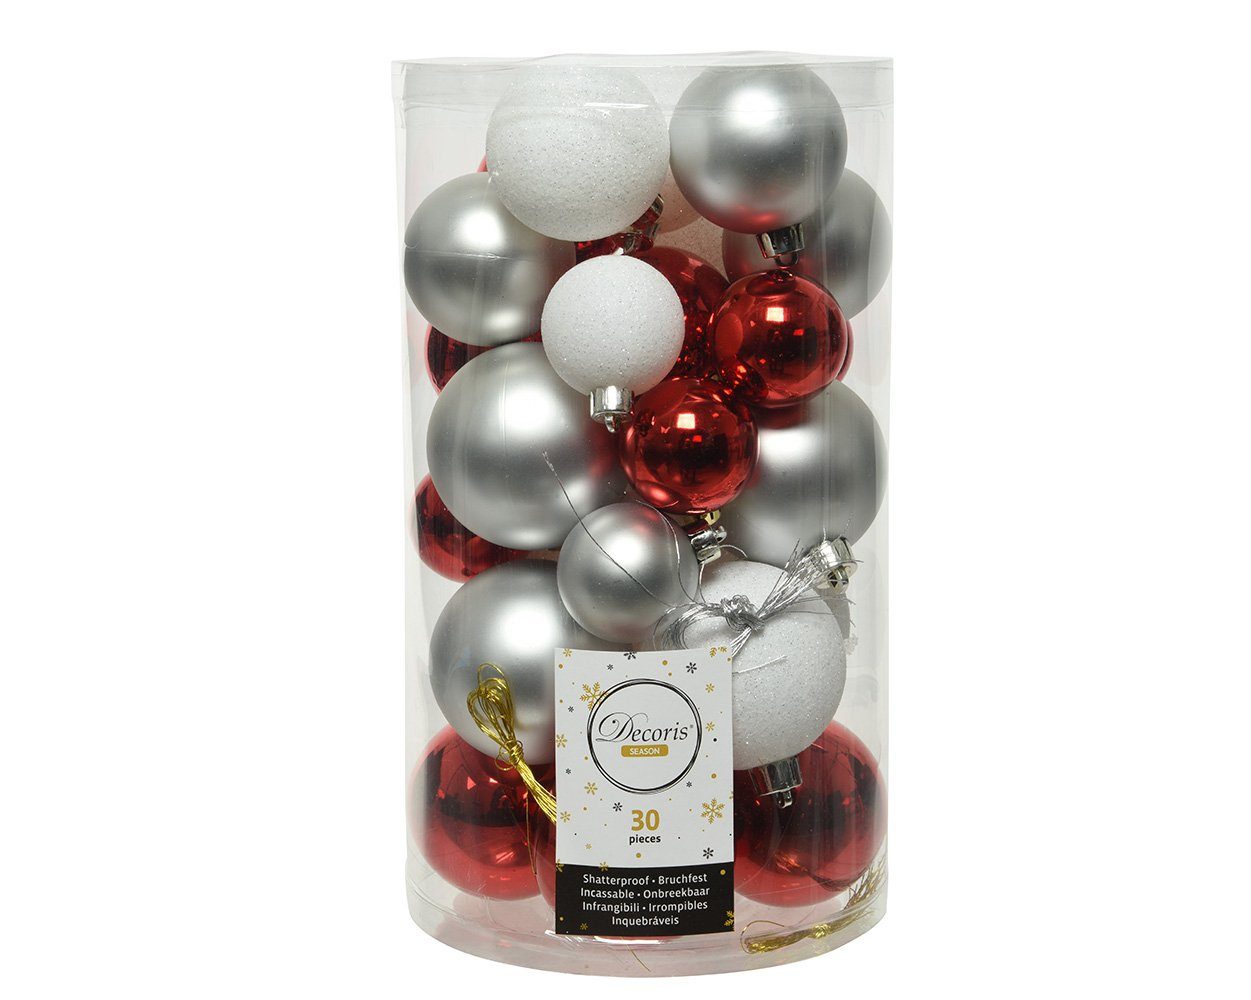 Decoris season decorations Weihnachtsbaumkugel, Weihnachtskugeln Kunststoff Mix 4-6cm rot / weiß / silber, 30er Set